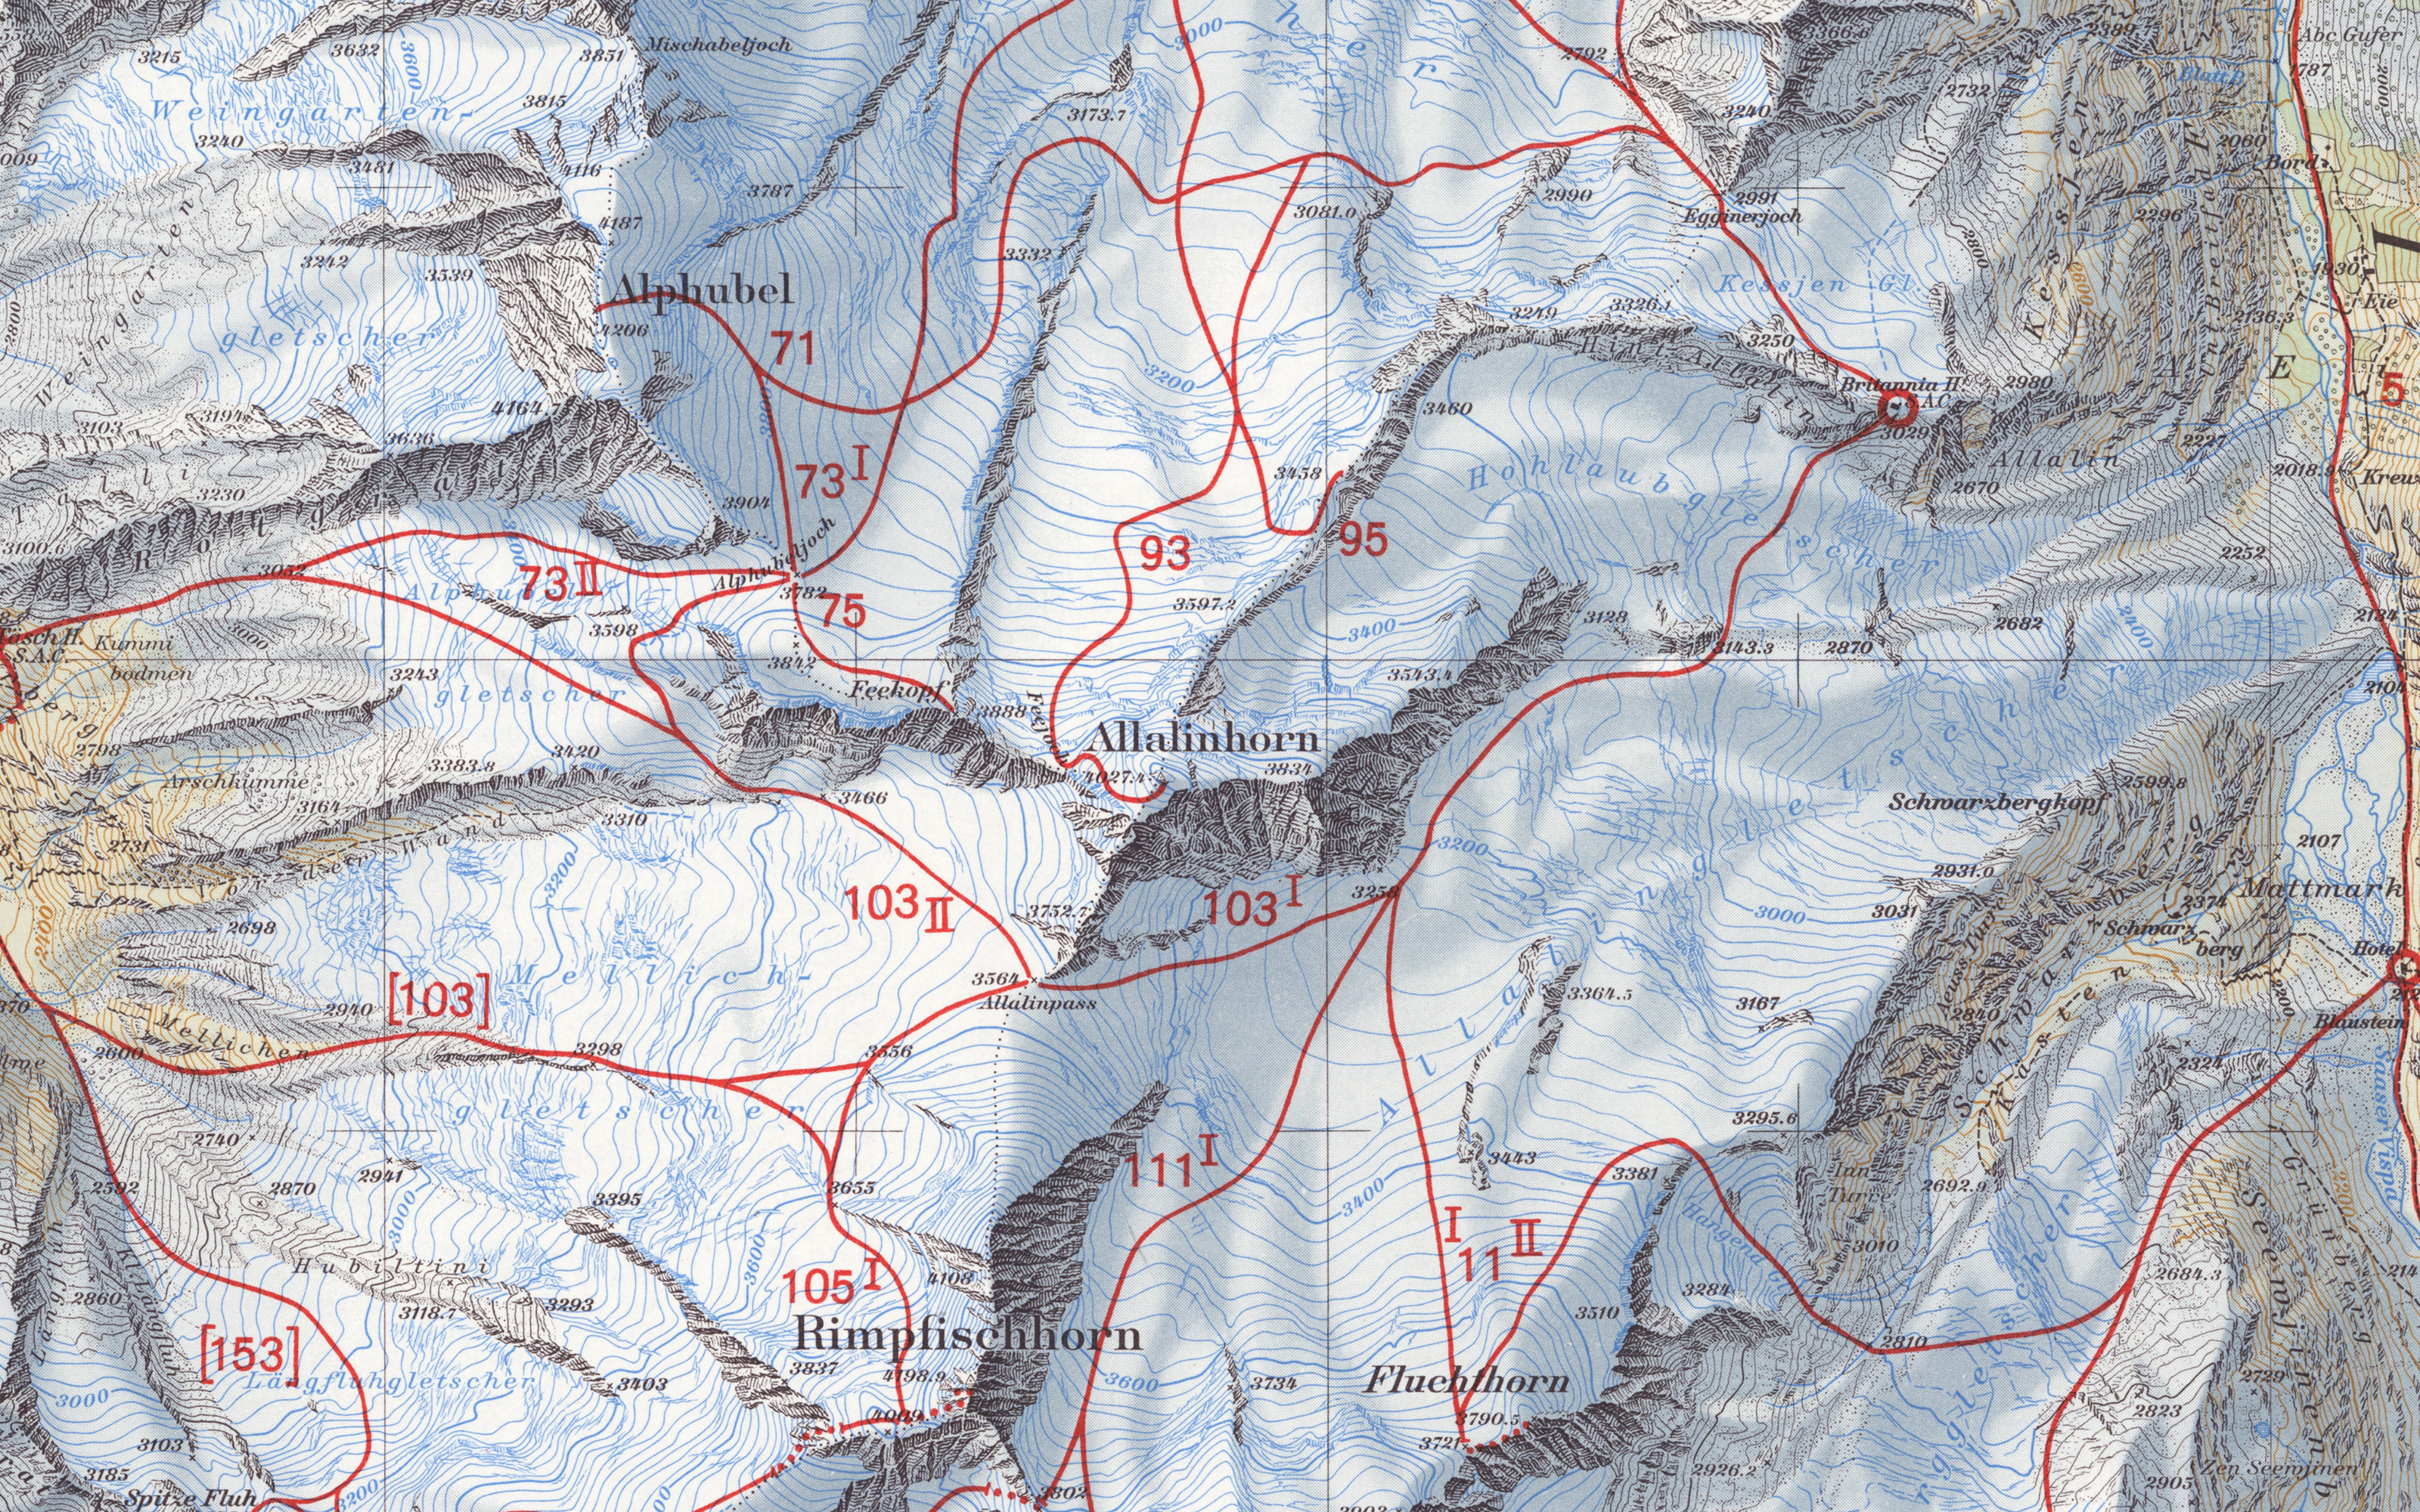 Ausschnitt der Skitourenkarte Mischabel 1956. Die Skirouten sind mit roten Linien eingetragen und mit Nummern versehen.